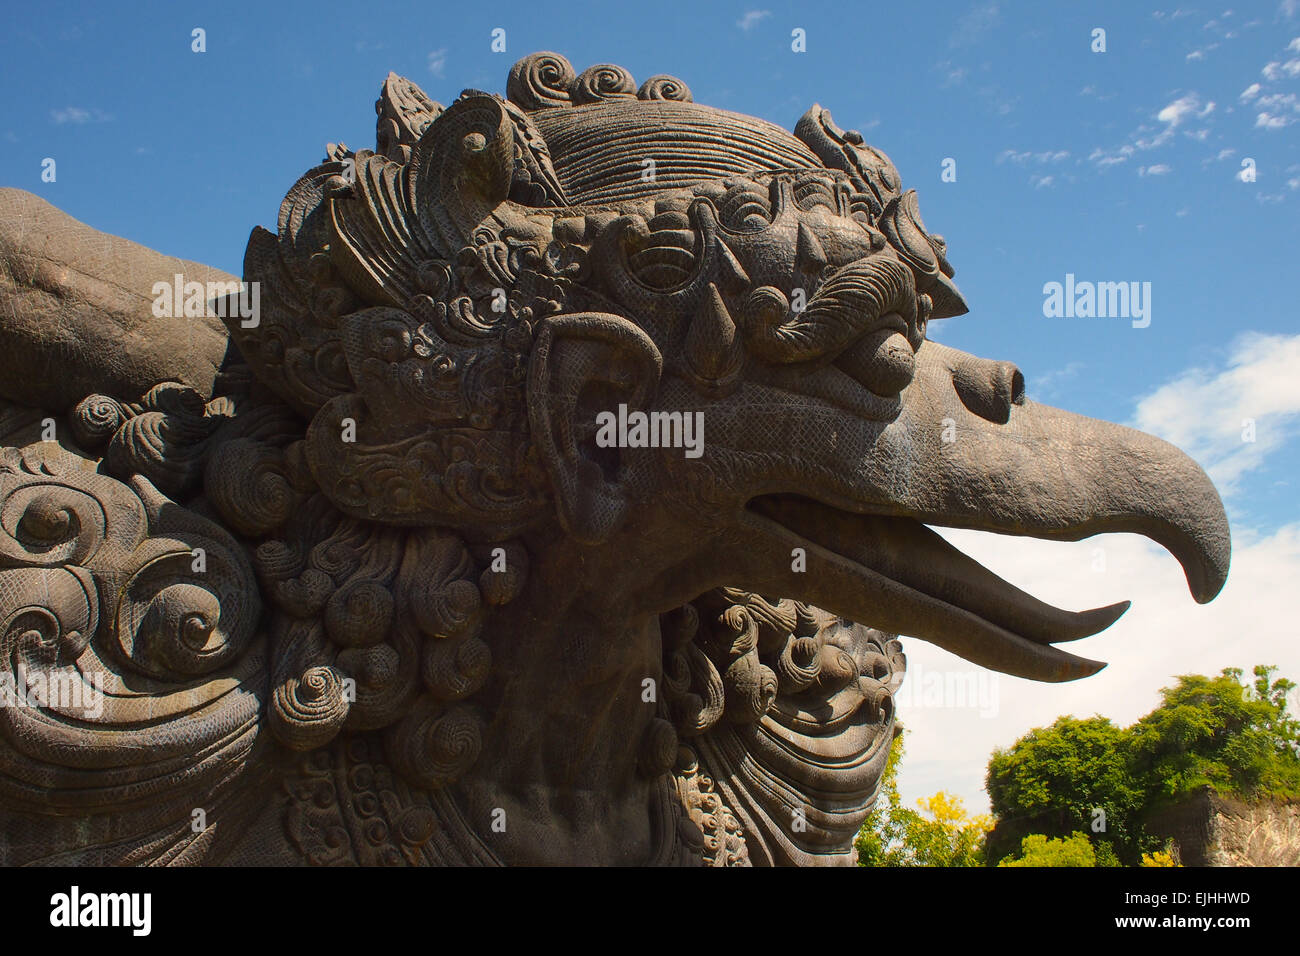 La testa della statua di Garuda guarda vicino al parco culturale Garuda Wisnu Kencana, Bali, Indonesia Foto Stock